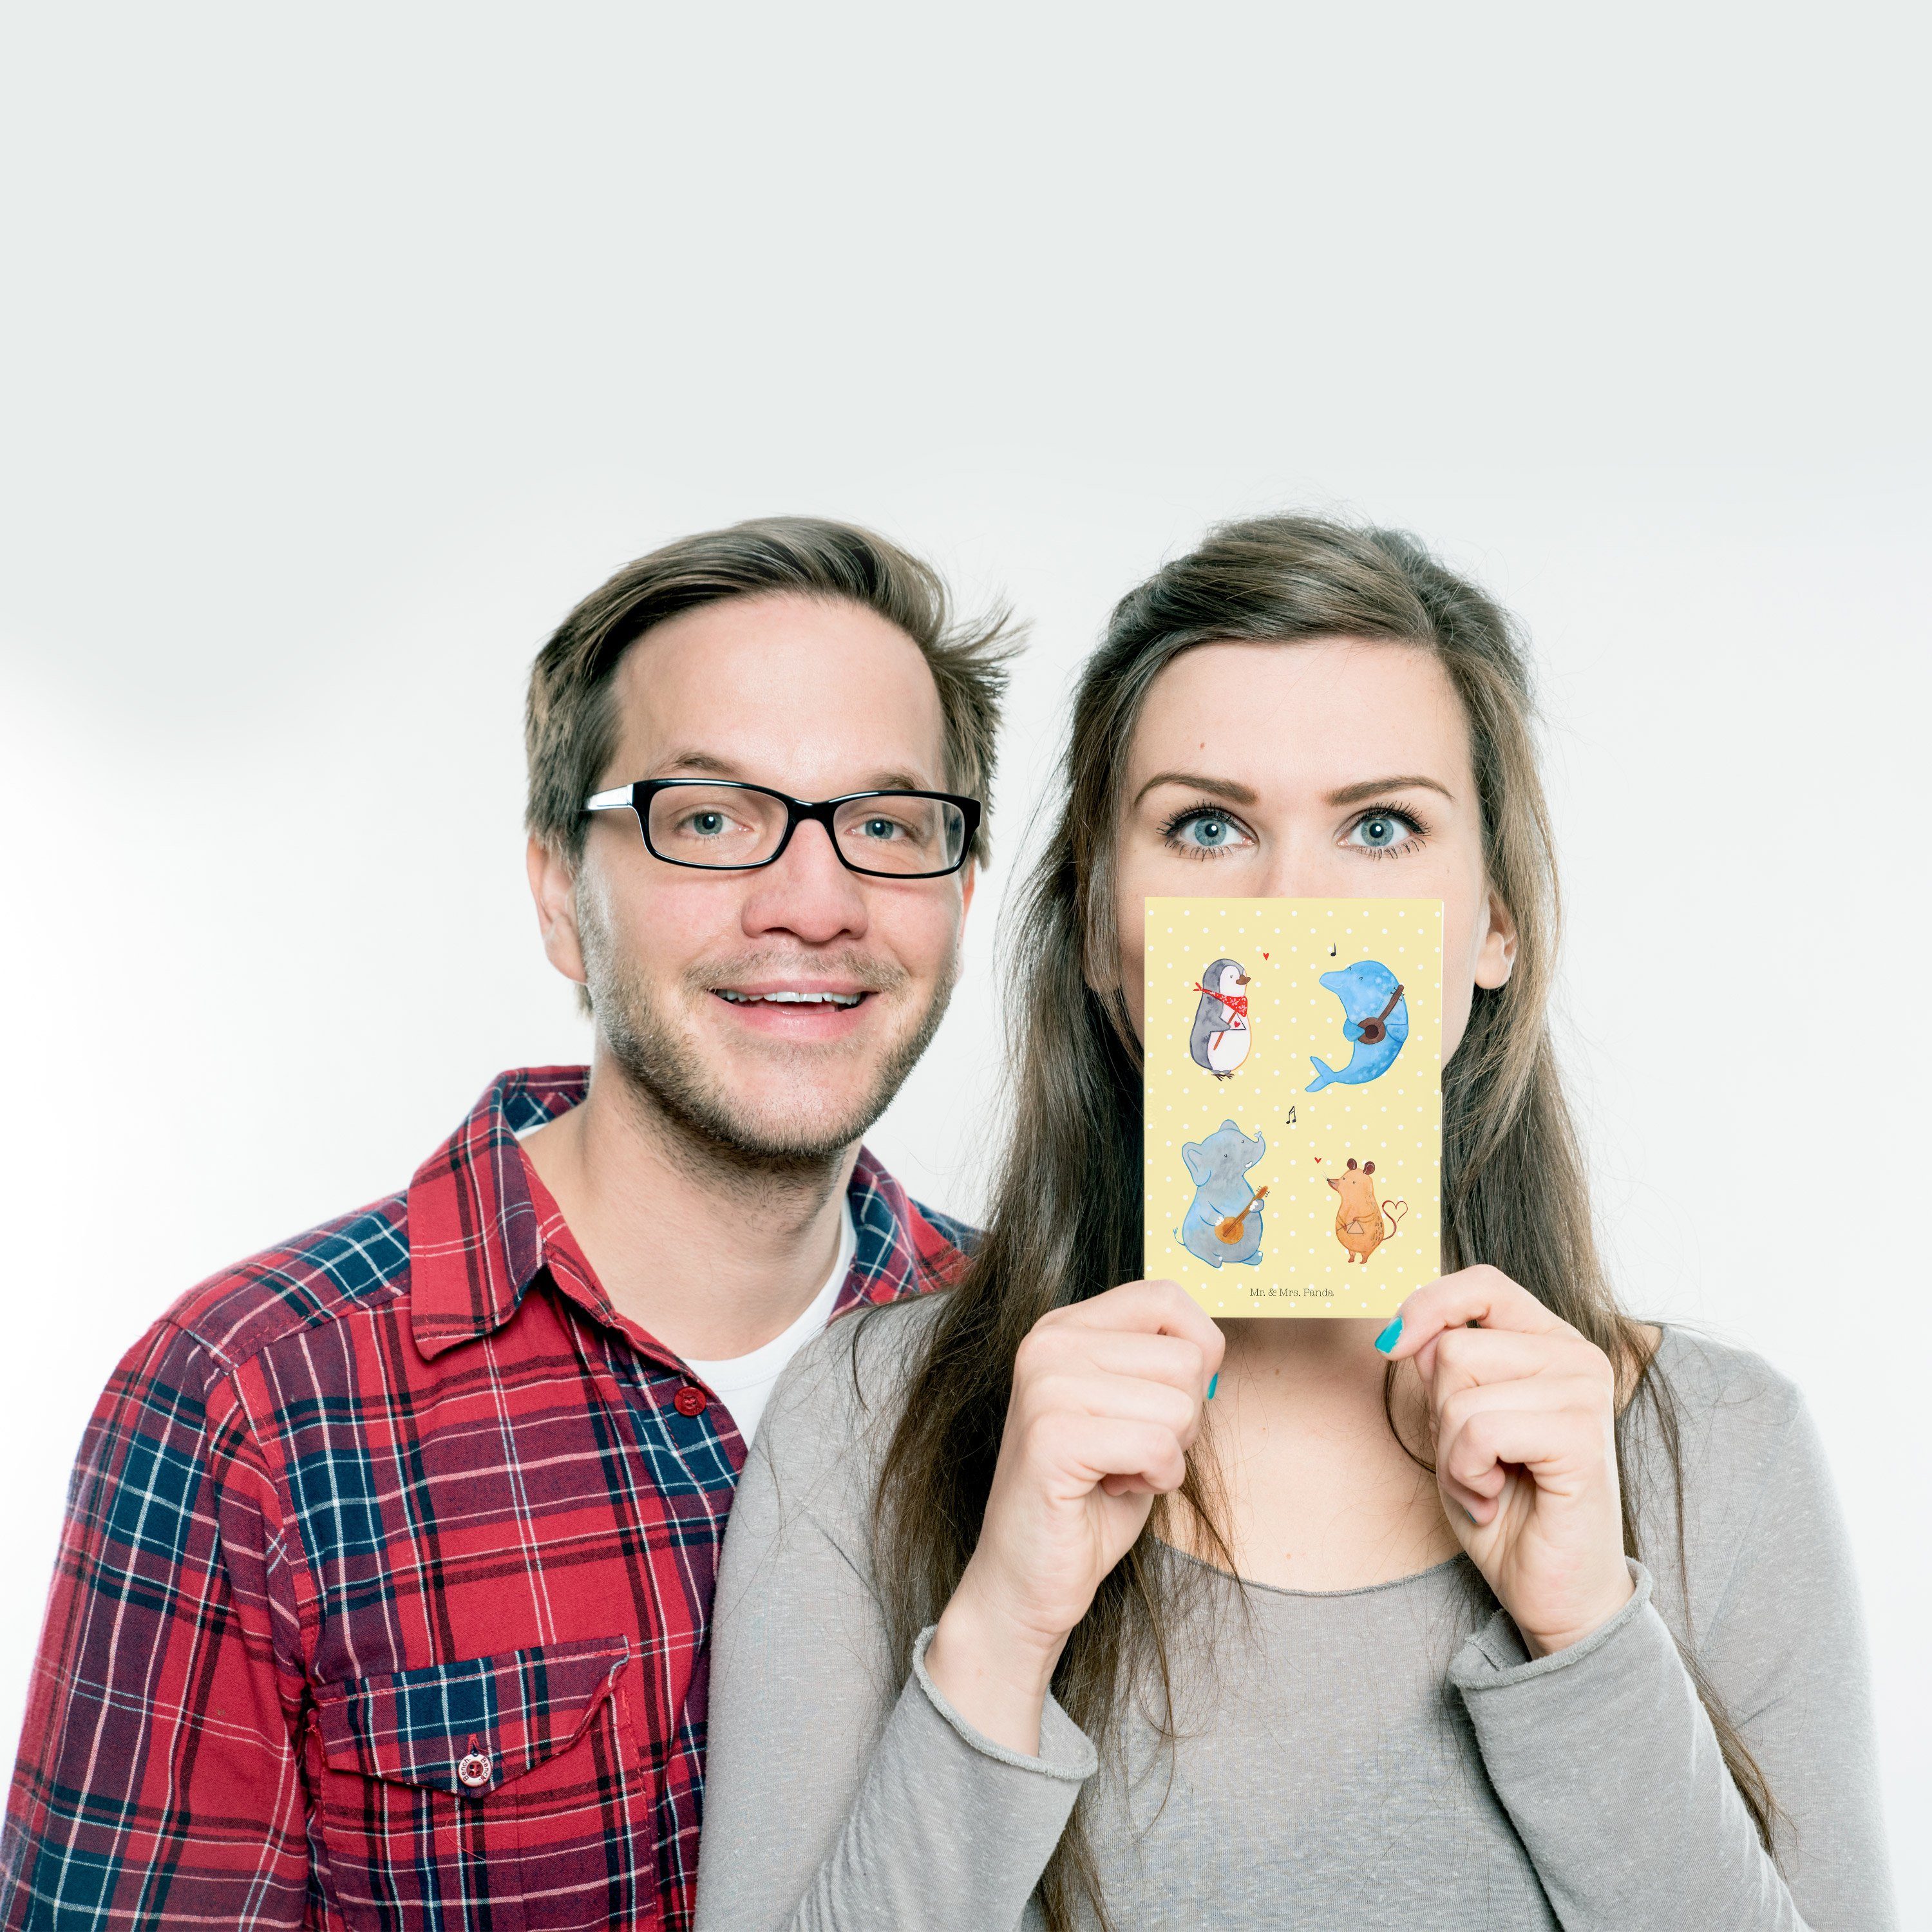 Mr. & Mrs. Panda Postkarte - Geschenk, - Band Pastell Mus Big Tiermotive, Gelb Geburtstagskarte